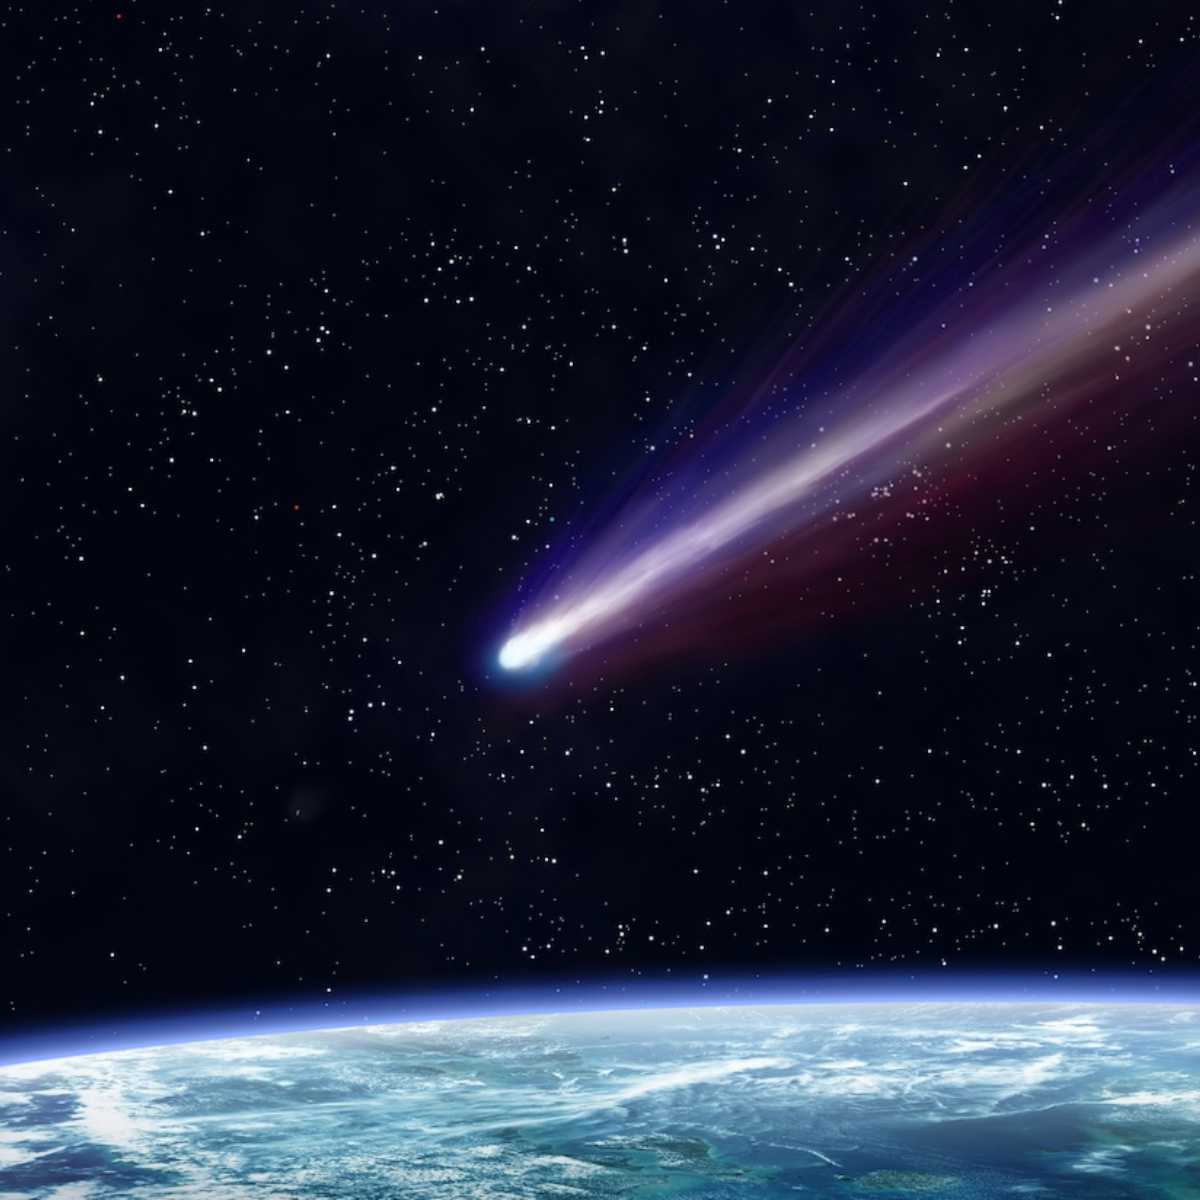 Imagen noticia El cometa más grande jamás visto pasará cerca de la Tierra